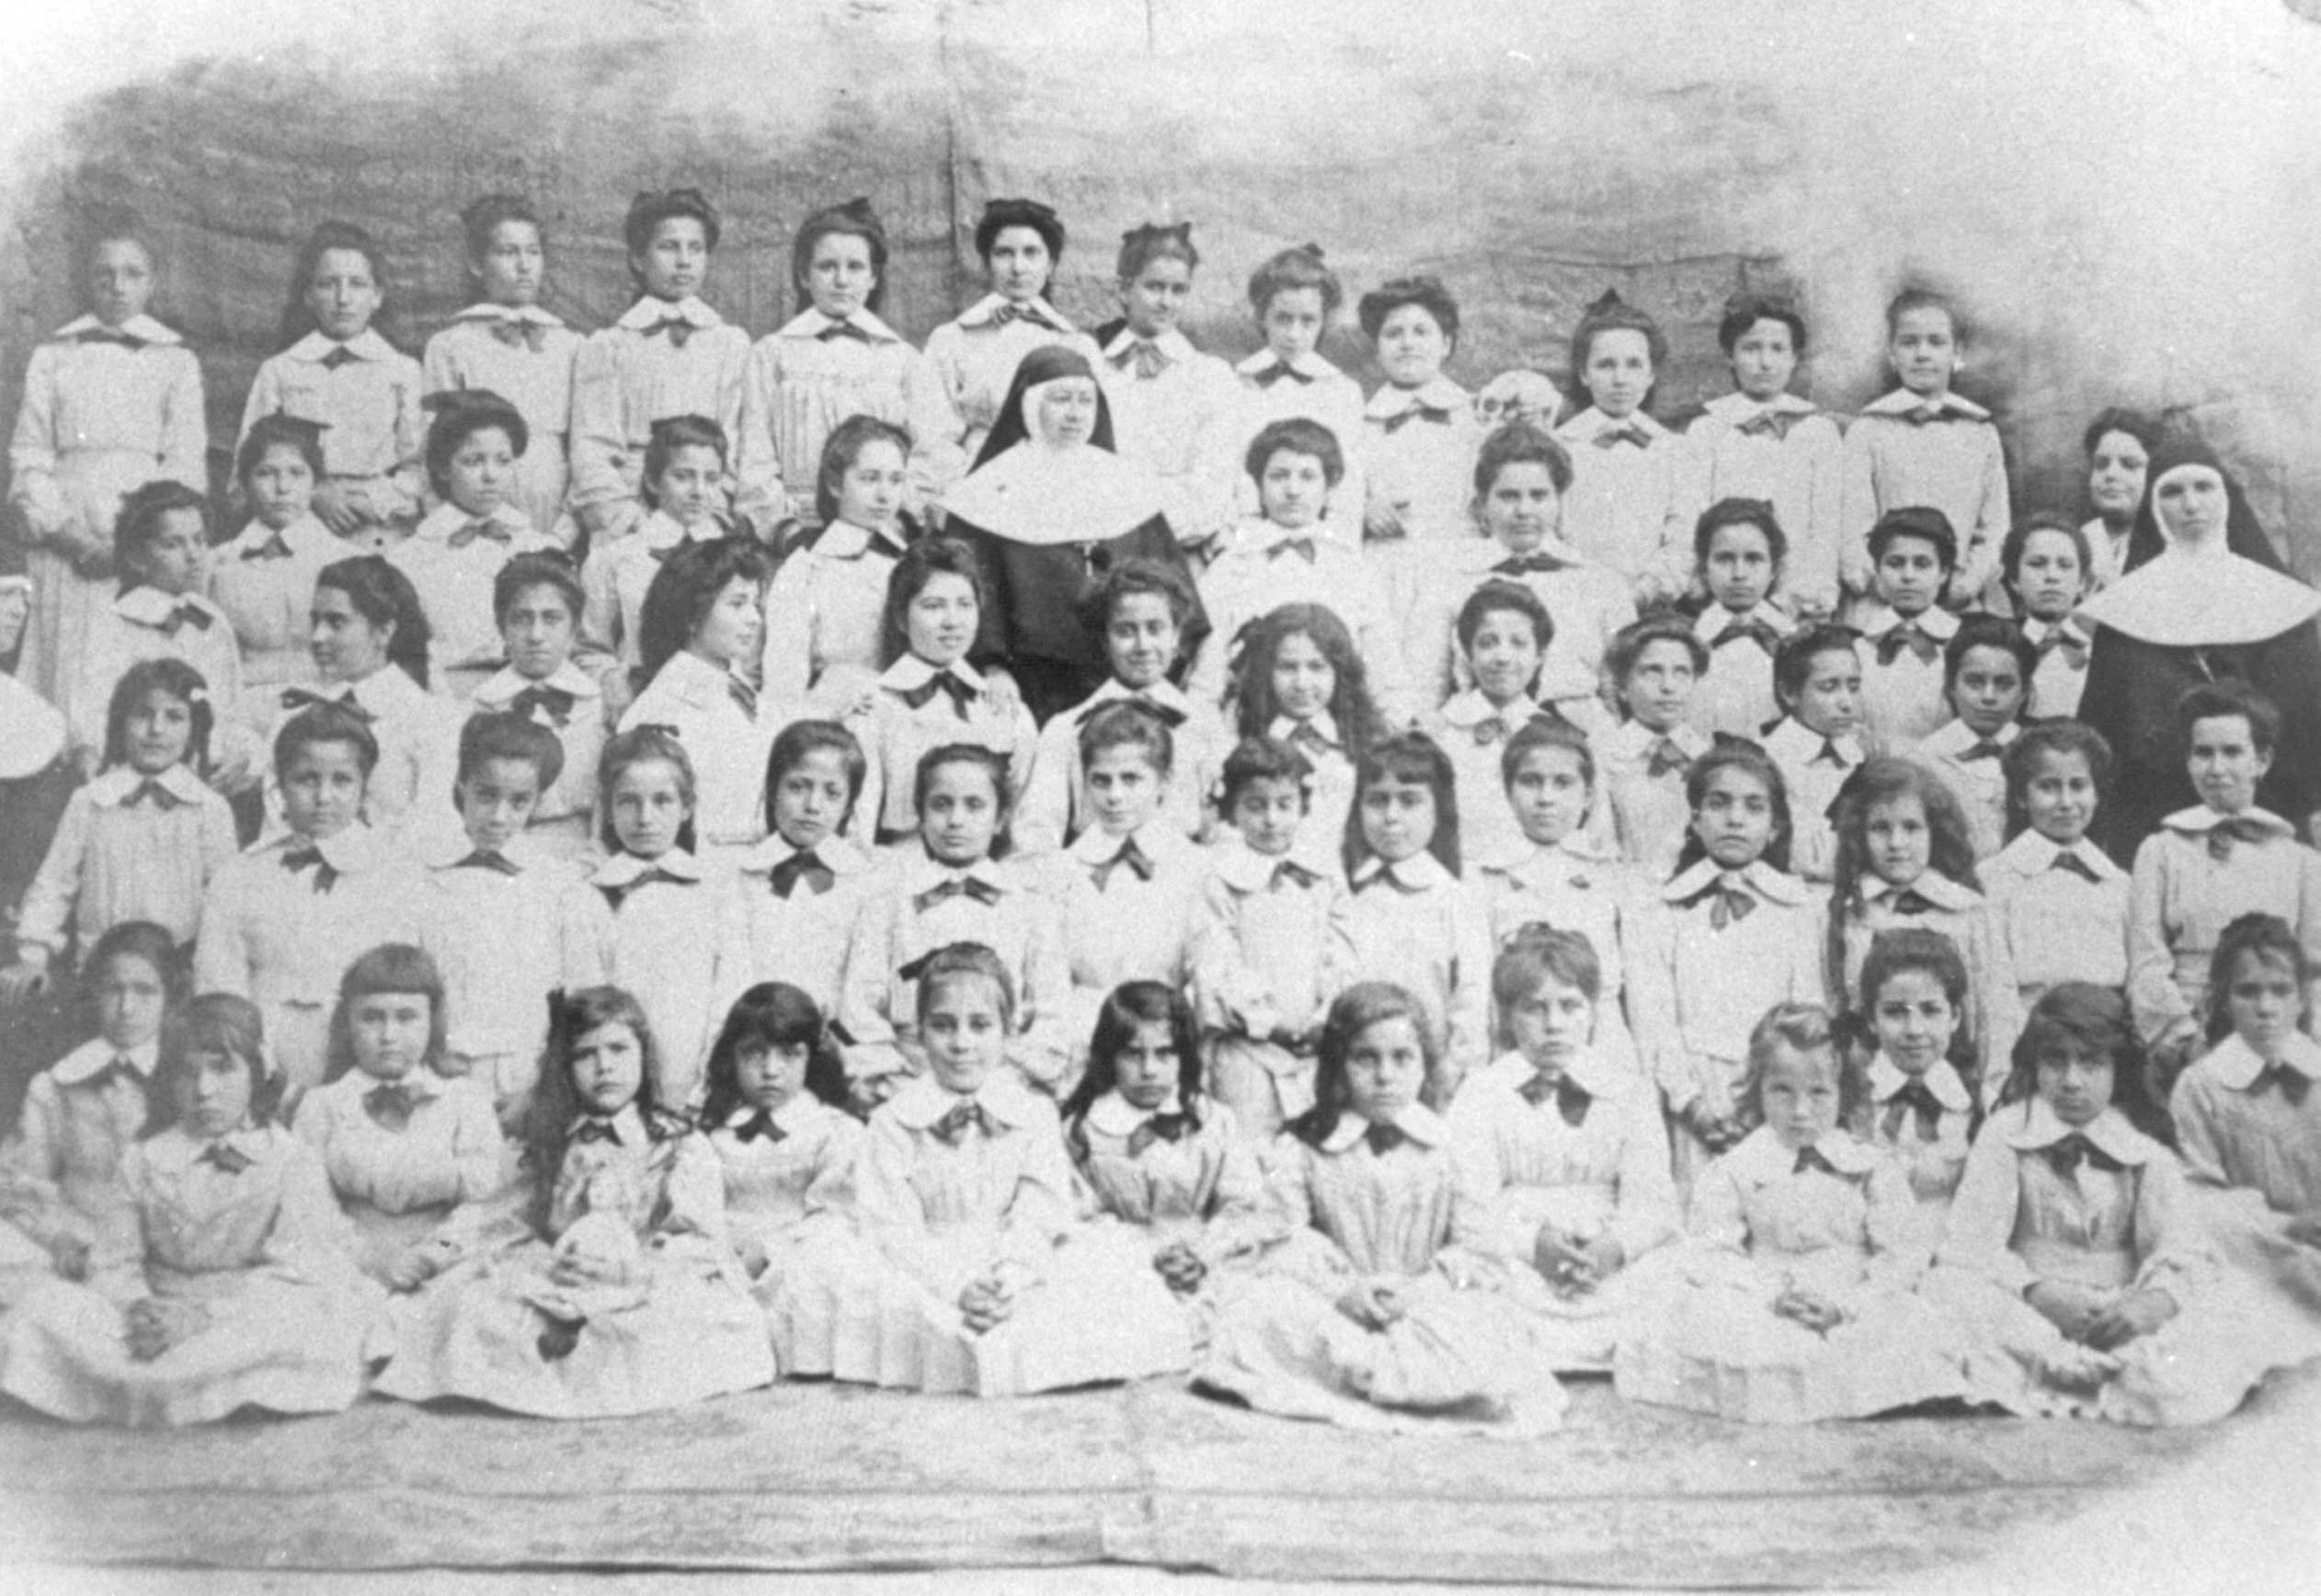 Colegio de la Sagrada Familia de las Siervas de Jesús Sacramentado.
Testimonio de su presencia en Gáldar es la presente fotografía hecha a principios del XX.